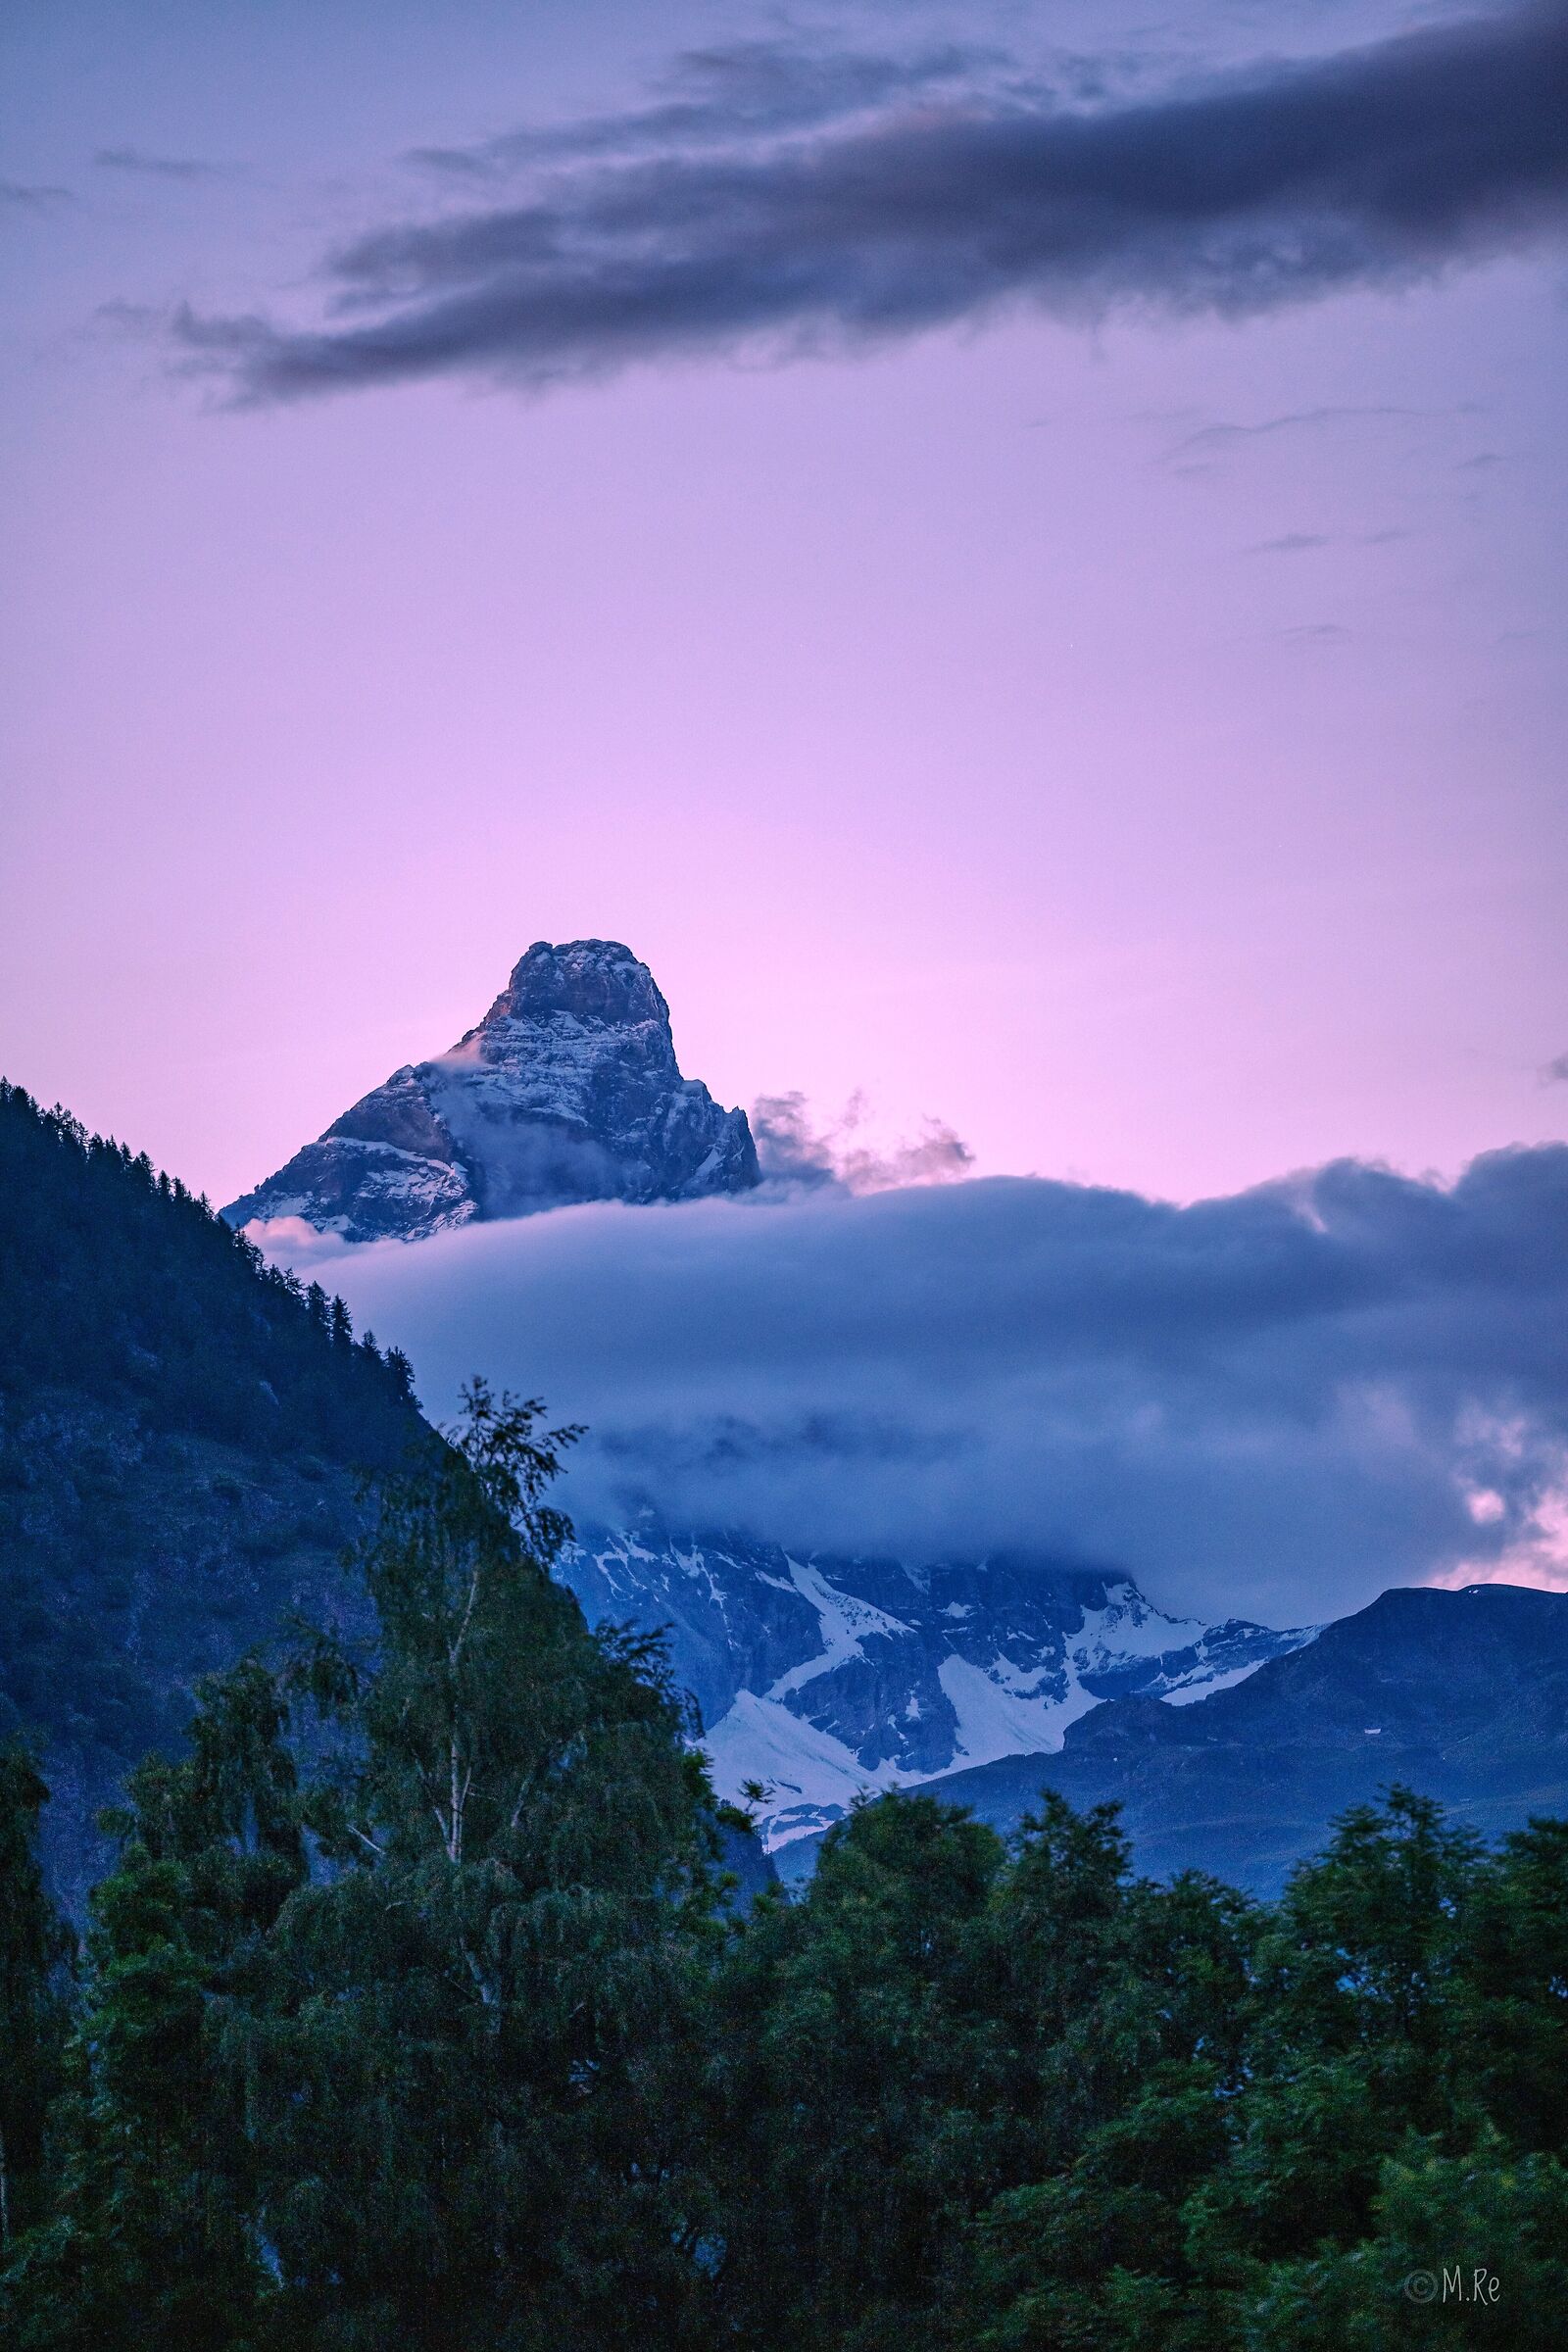 The Matterhorn in the evening...